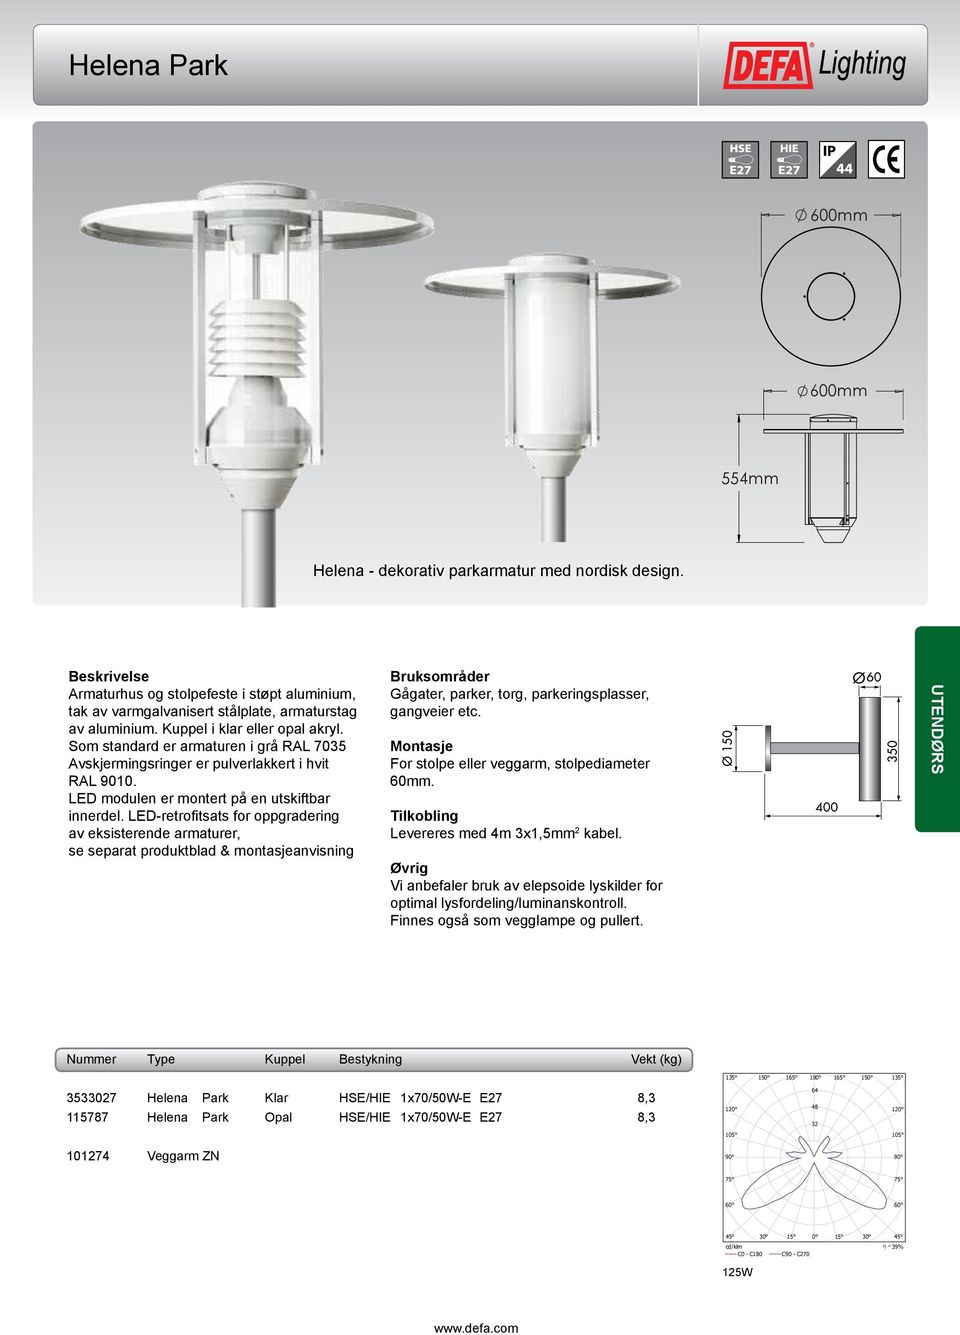 For stolpe eller veggarm, stolpediameter 60mm. Levereres med 4m 3x1,5mm 2 kabel. Vi anbefaler bruk av elepsoide lyskilder for optimal lysfordeling/luminanskontroll.